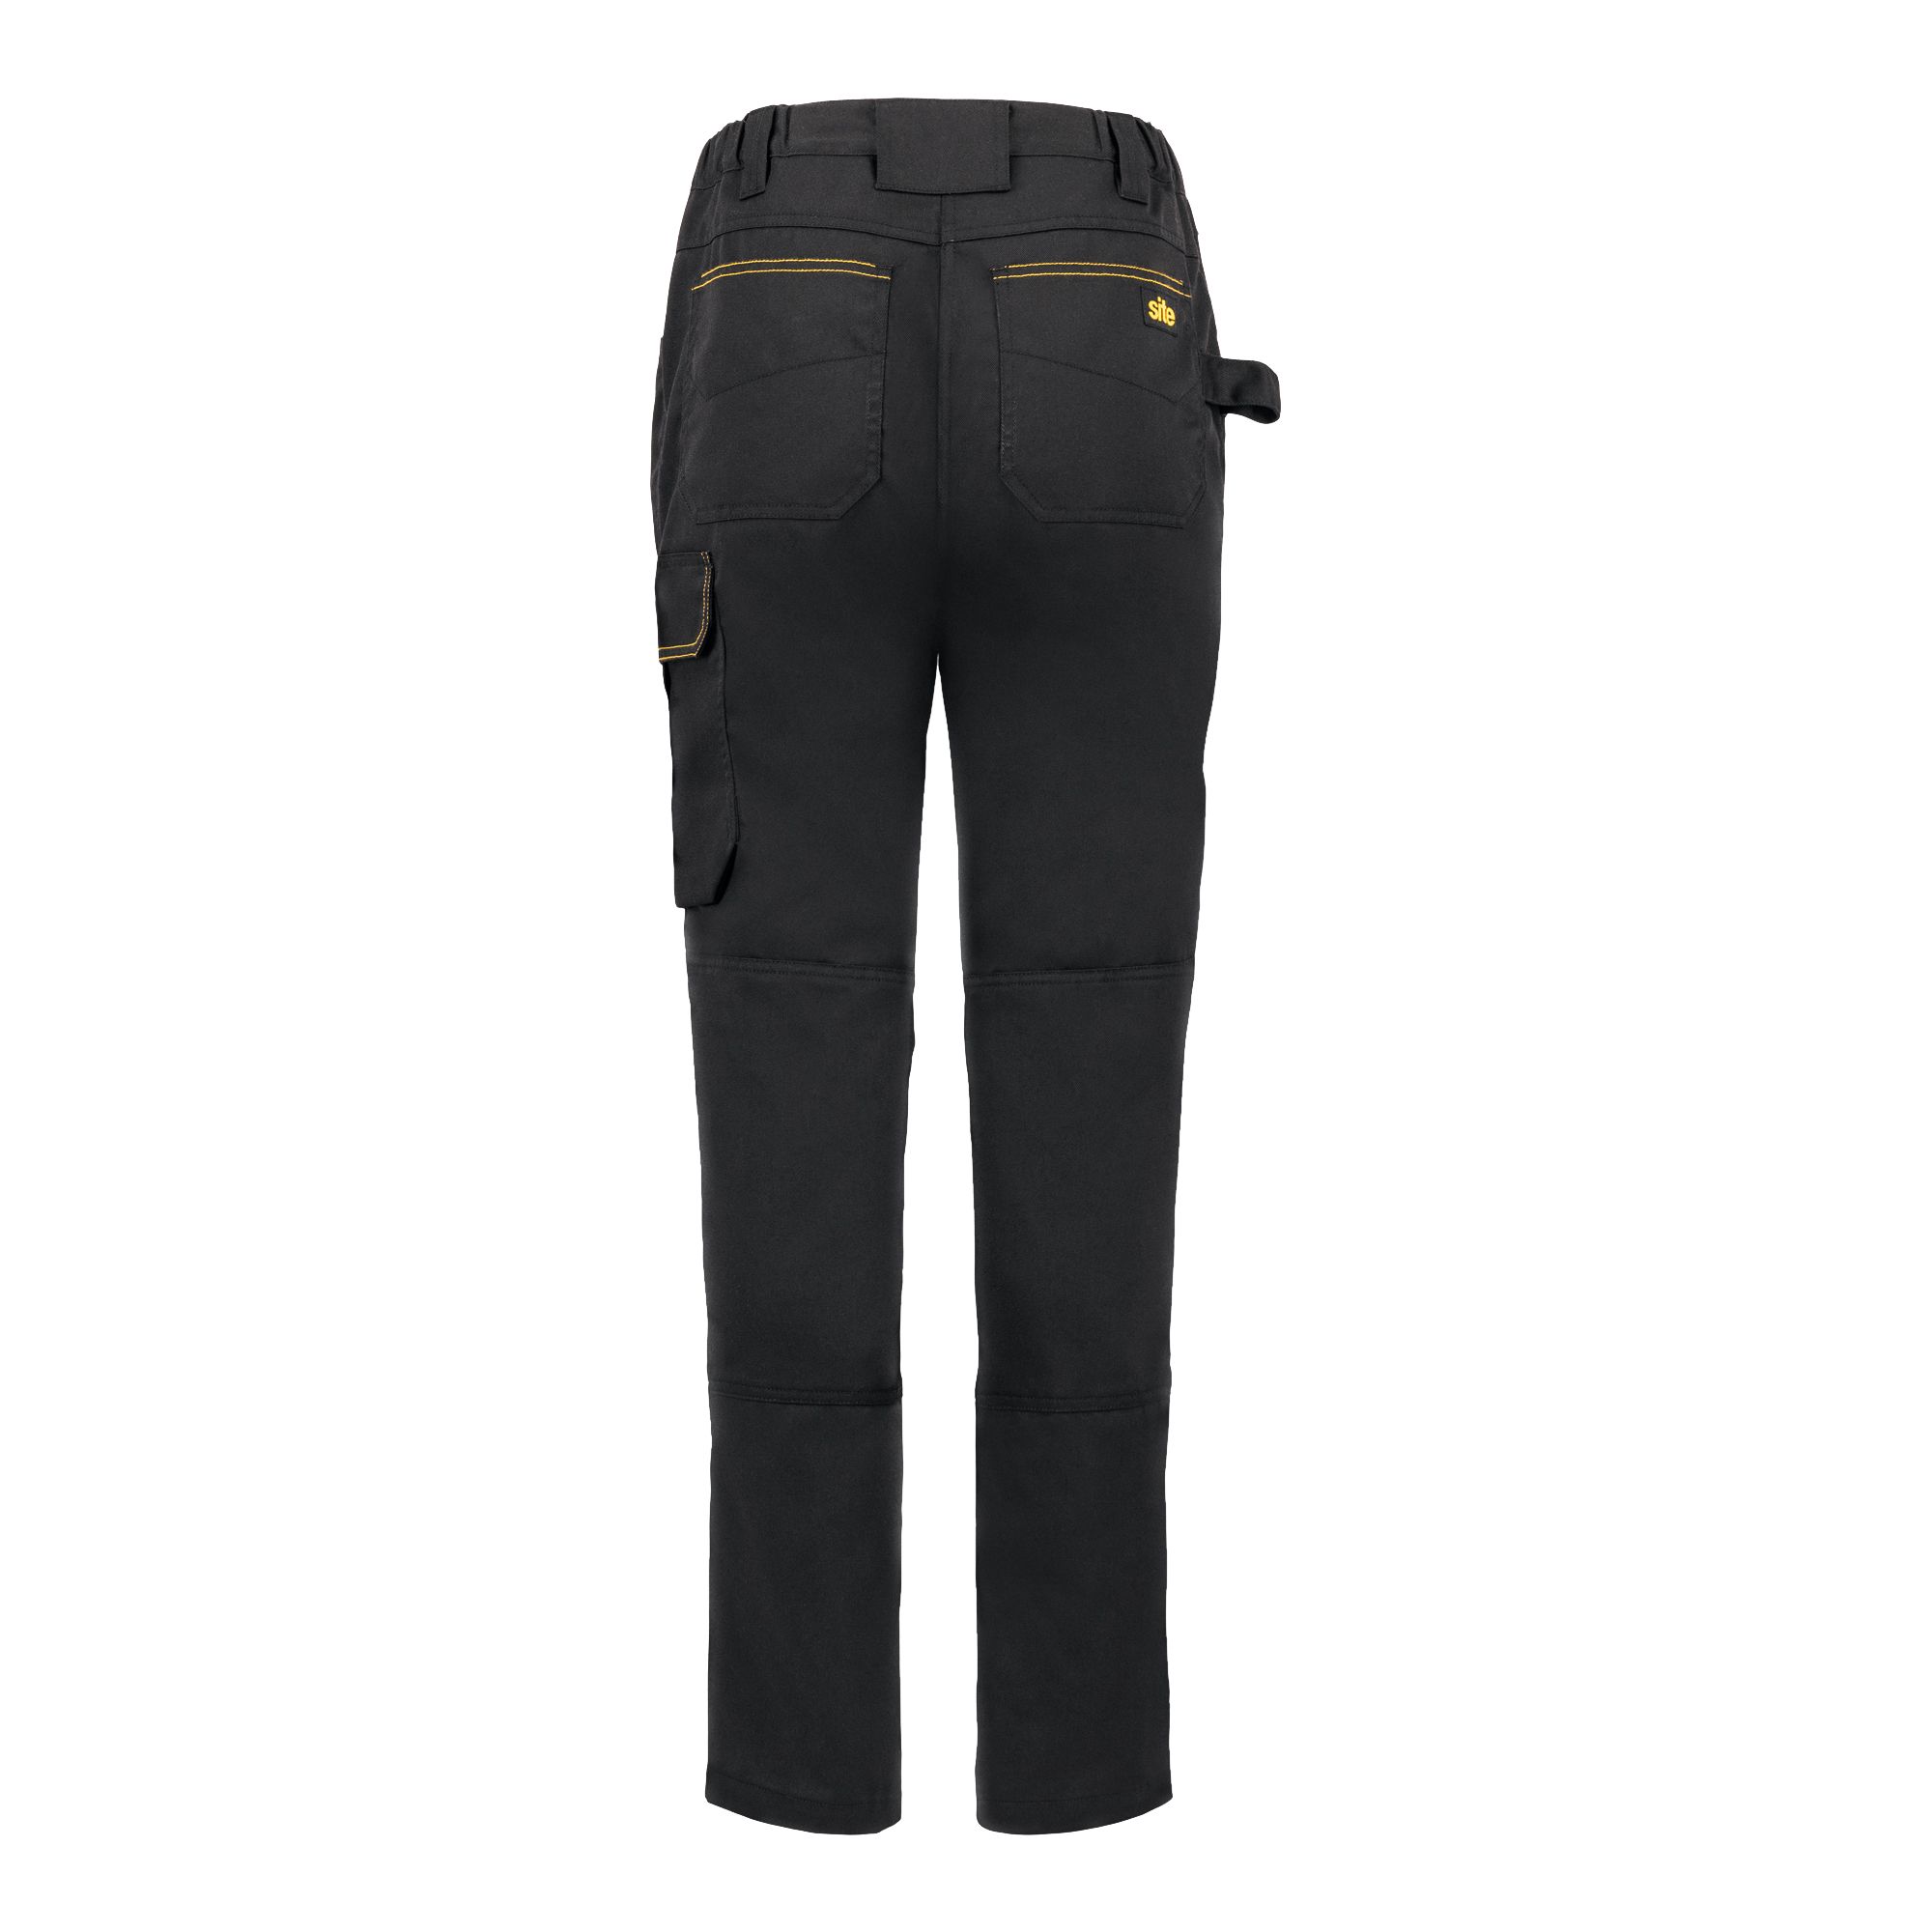 Site Heyward Black Ladies trousers, Size 16 L31"